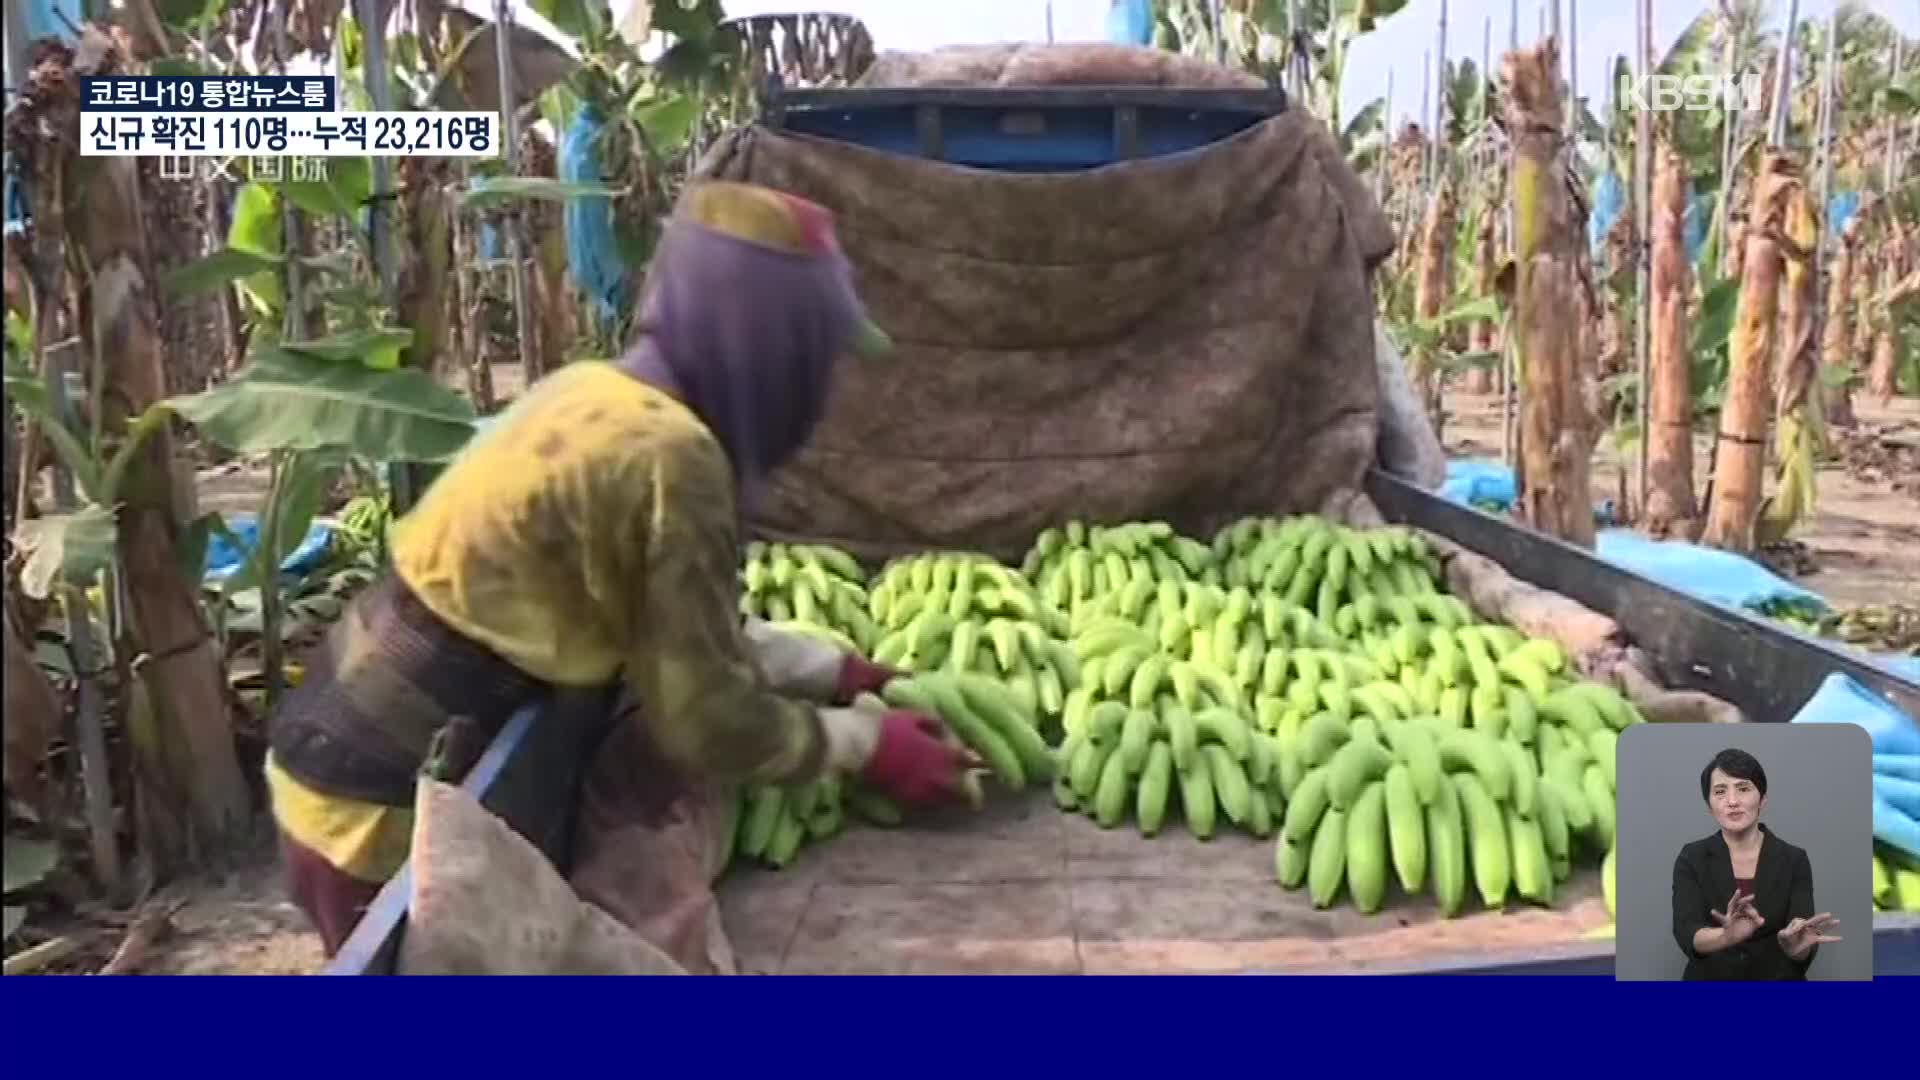 타이완, 바나나 가격 폭락에 농가 울상